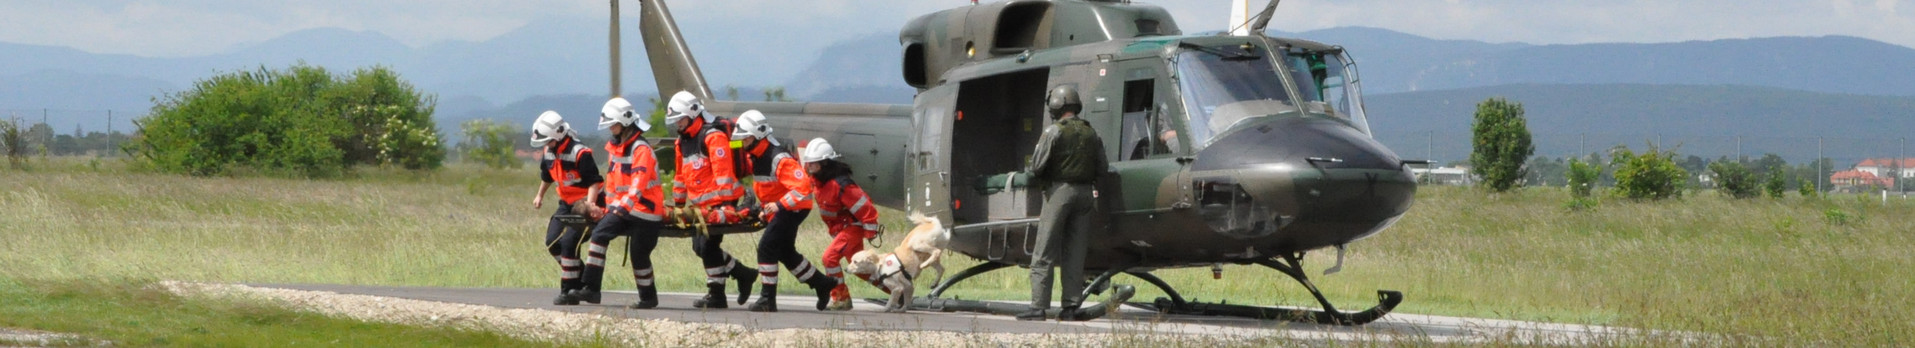 Bei einer Hubschrauberübung laufen fünf Johanniter und ein Rettungshund mit einer verletzten Person vom eben gelandeten Hubschrauber weg.